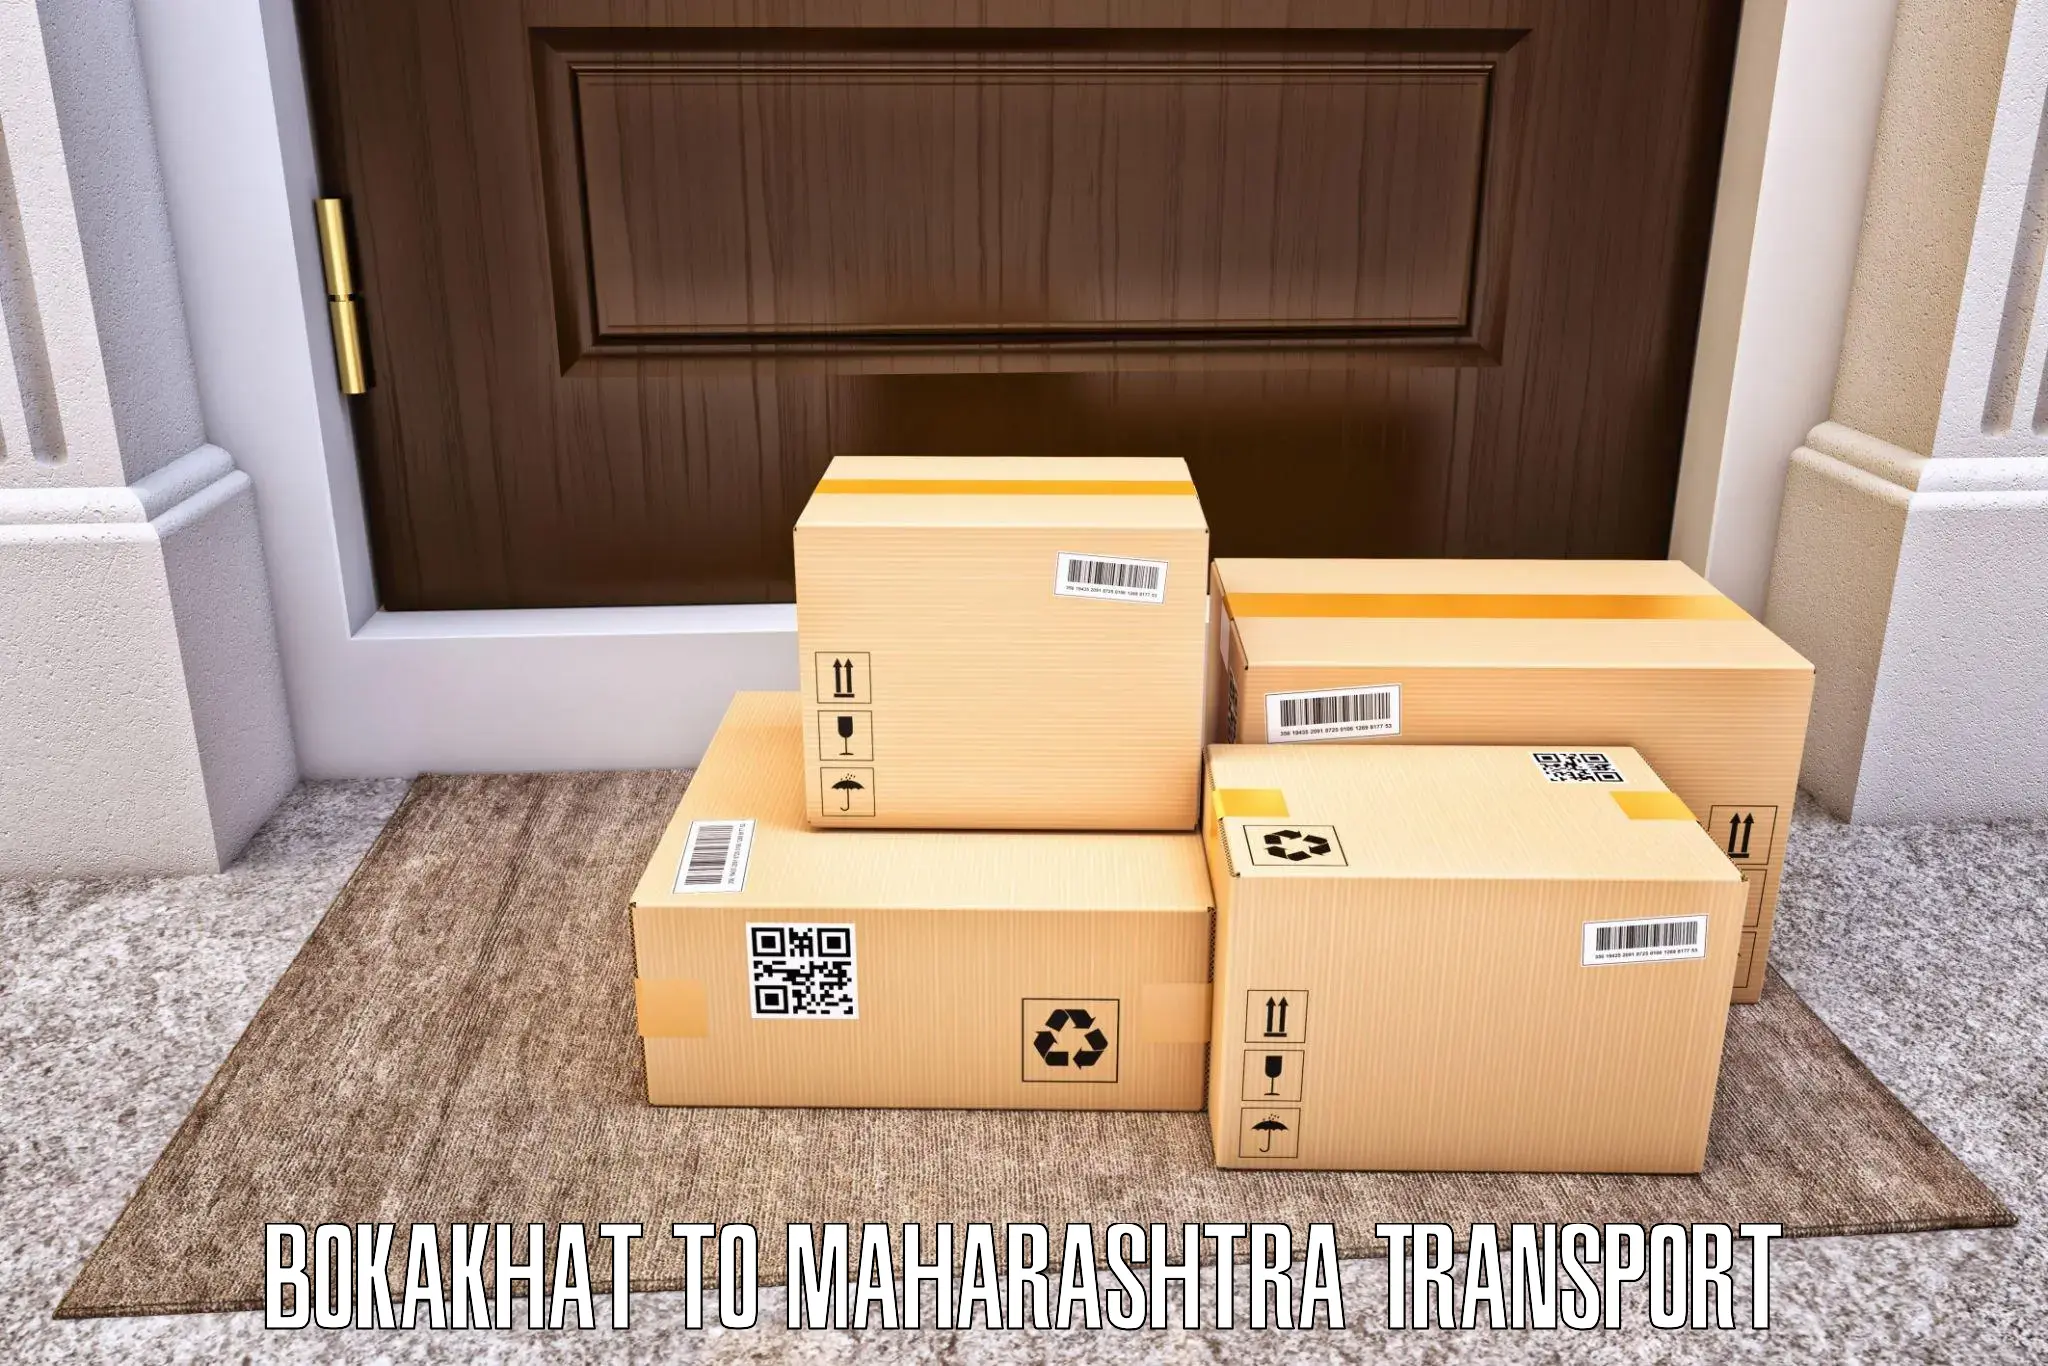 Material transport services Bokakhat to Akkalkot